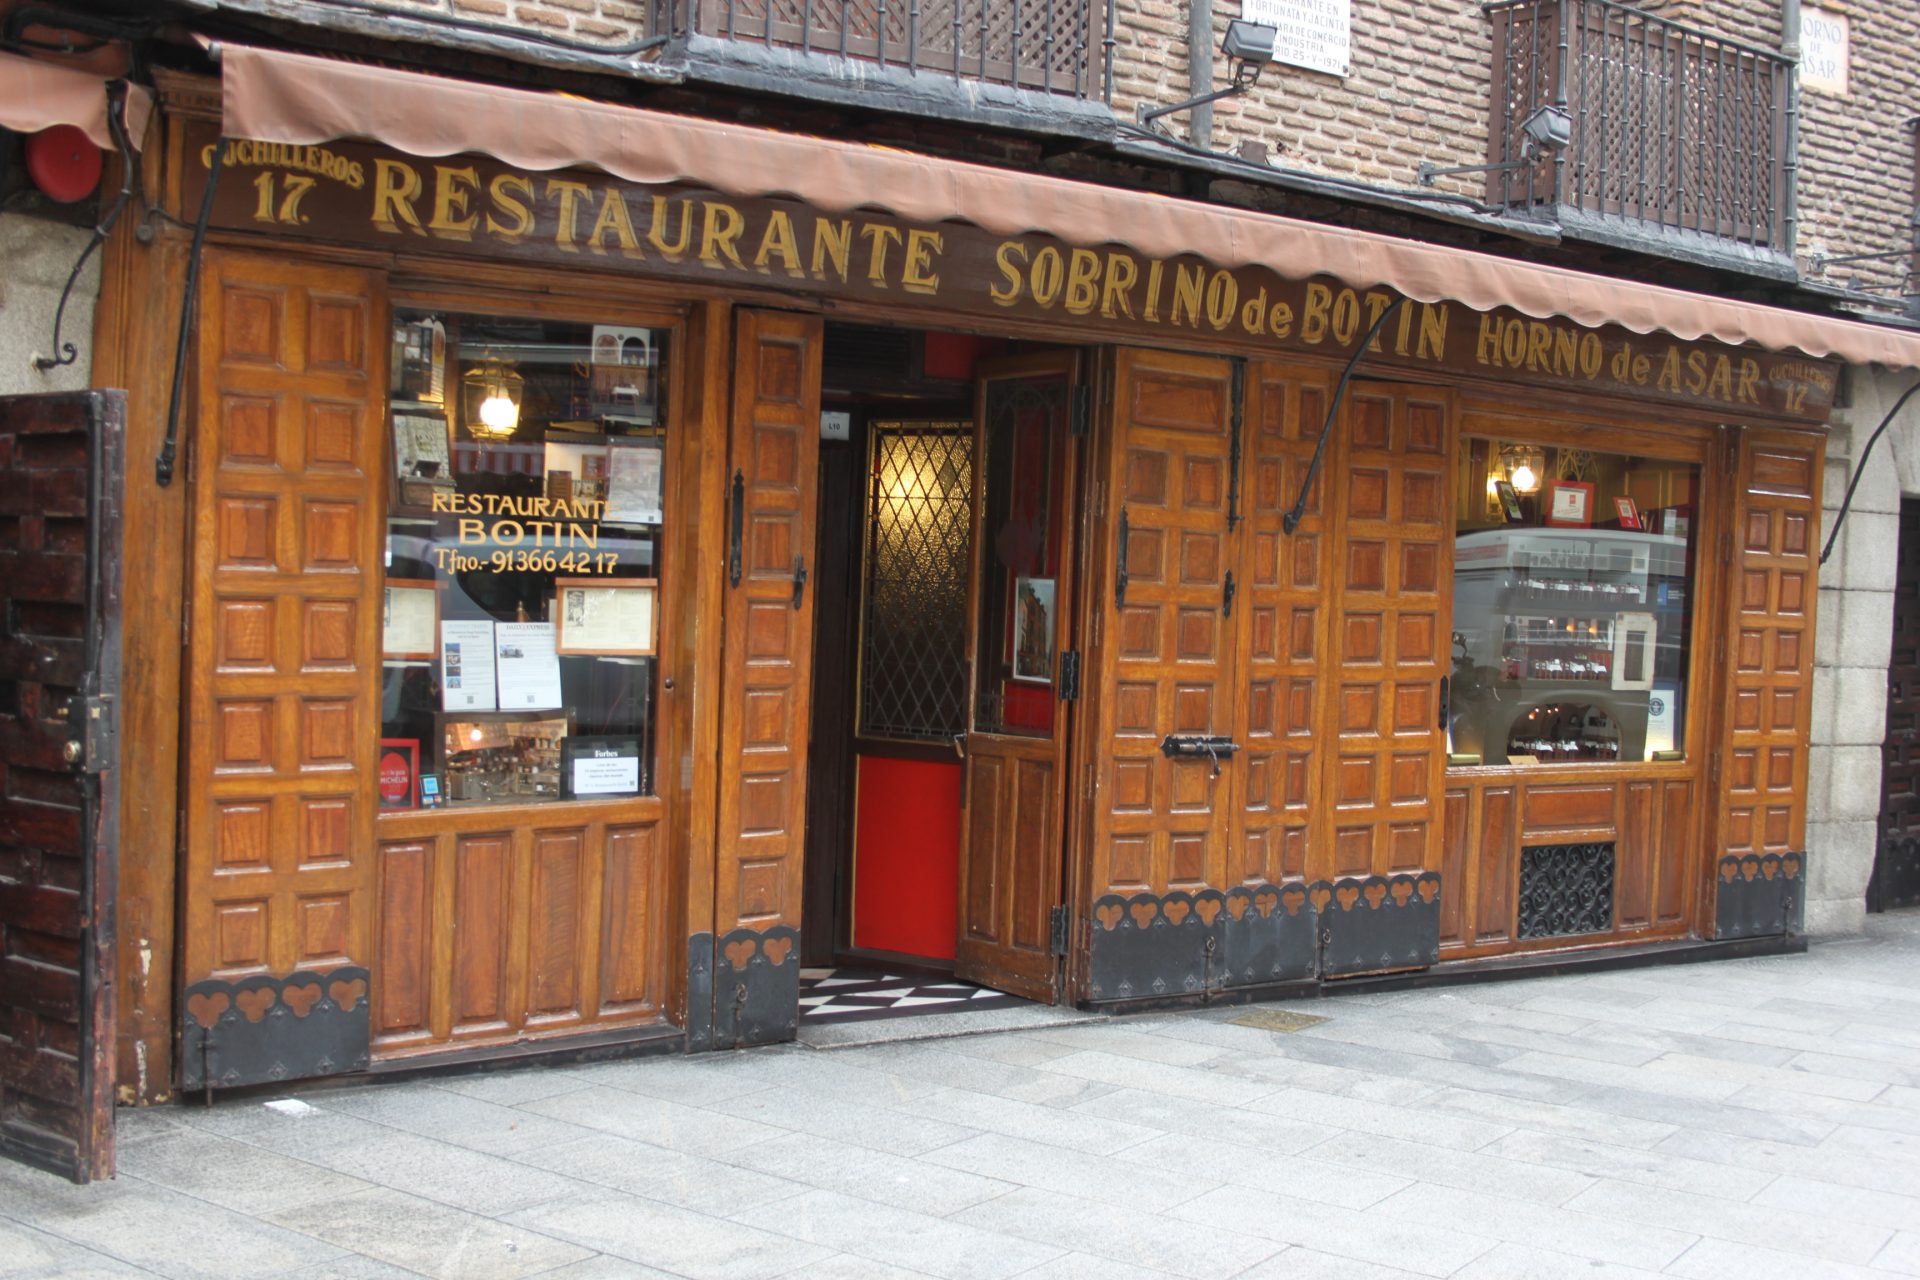 Le restaurant le plus ancien au monde !